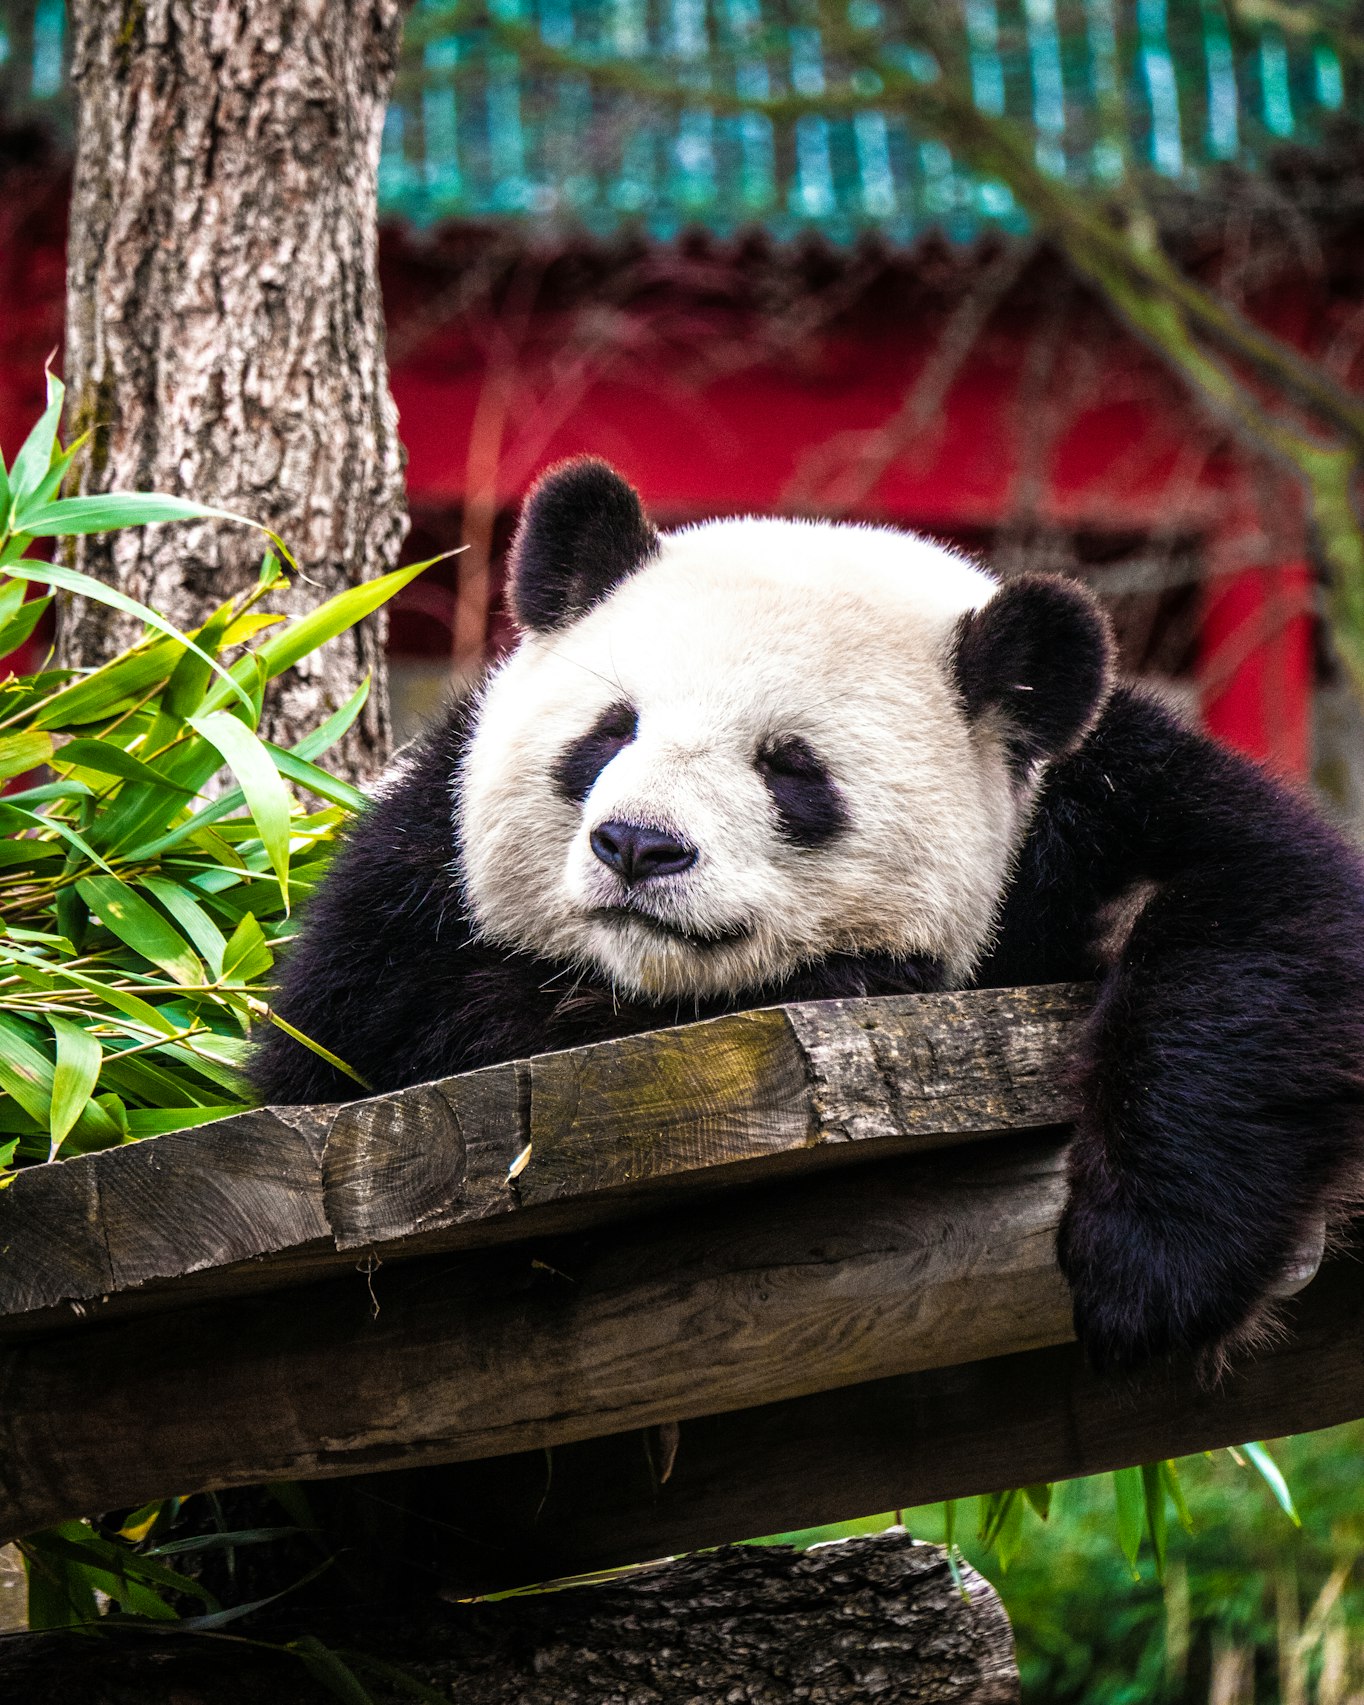 Sleeping panda at Berlin zoo